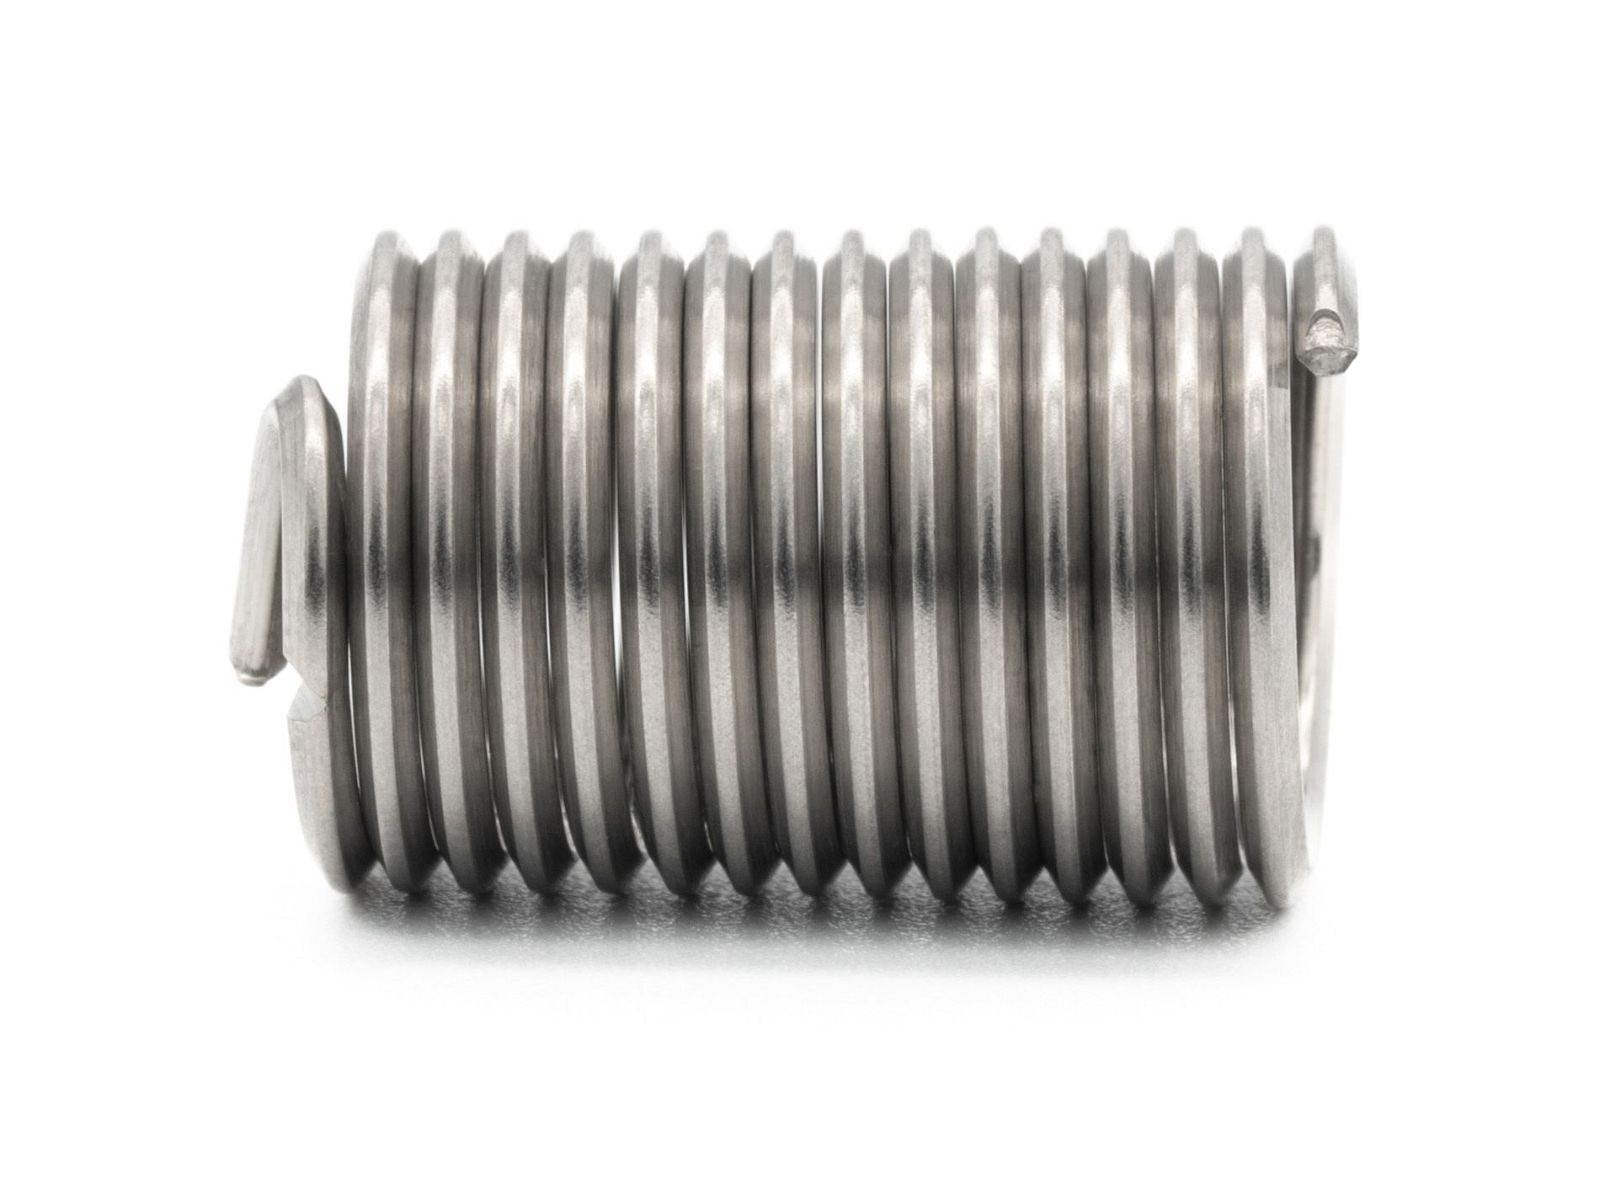 BaerCoil Wire Thread Inserts UNF 1/2 x 20 - 2.5 D (31.75 mm) - free running - 100 pcs.